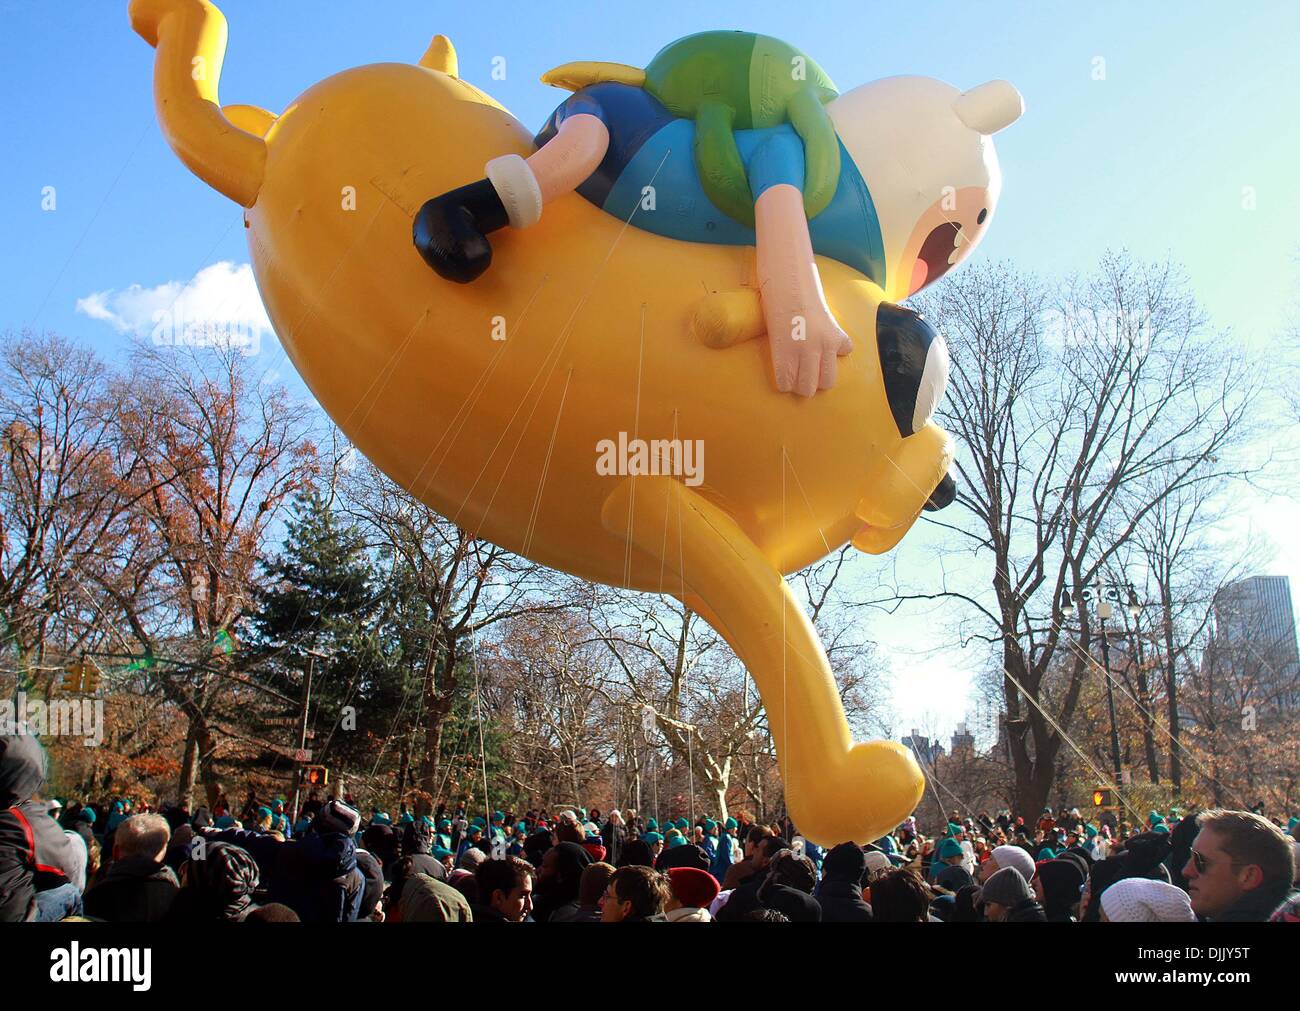 New York, USA. 28. November 2013. Pikachu Ballon schwebt über der Straße während der Macy's Thanksgiving Day Parade in New York, Vereinigte Staaten, 28. November 2013. (Xinhua/Wu Rong) Stockfoto